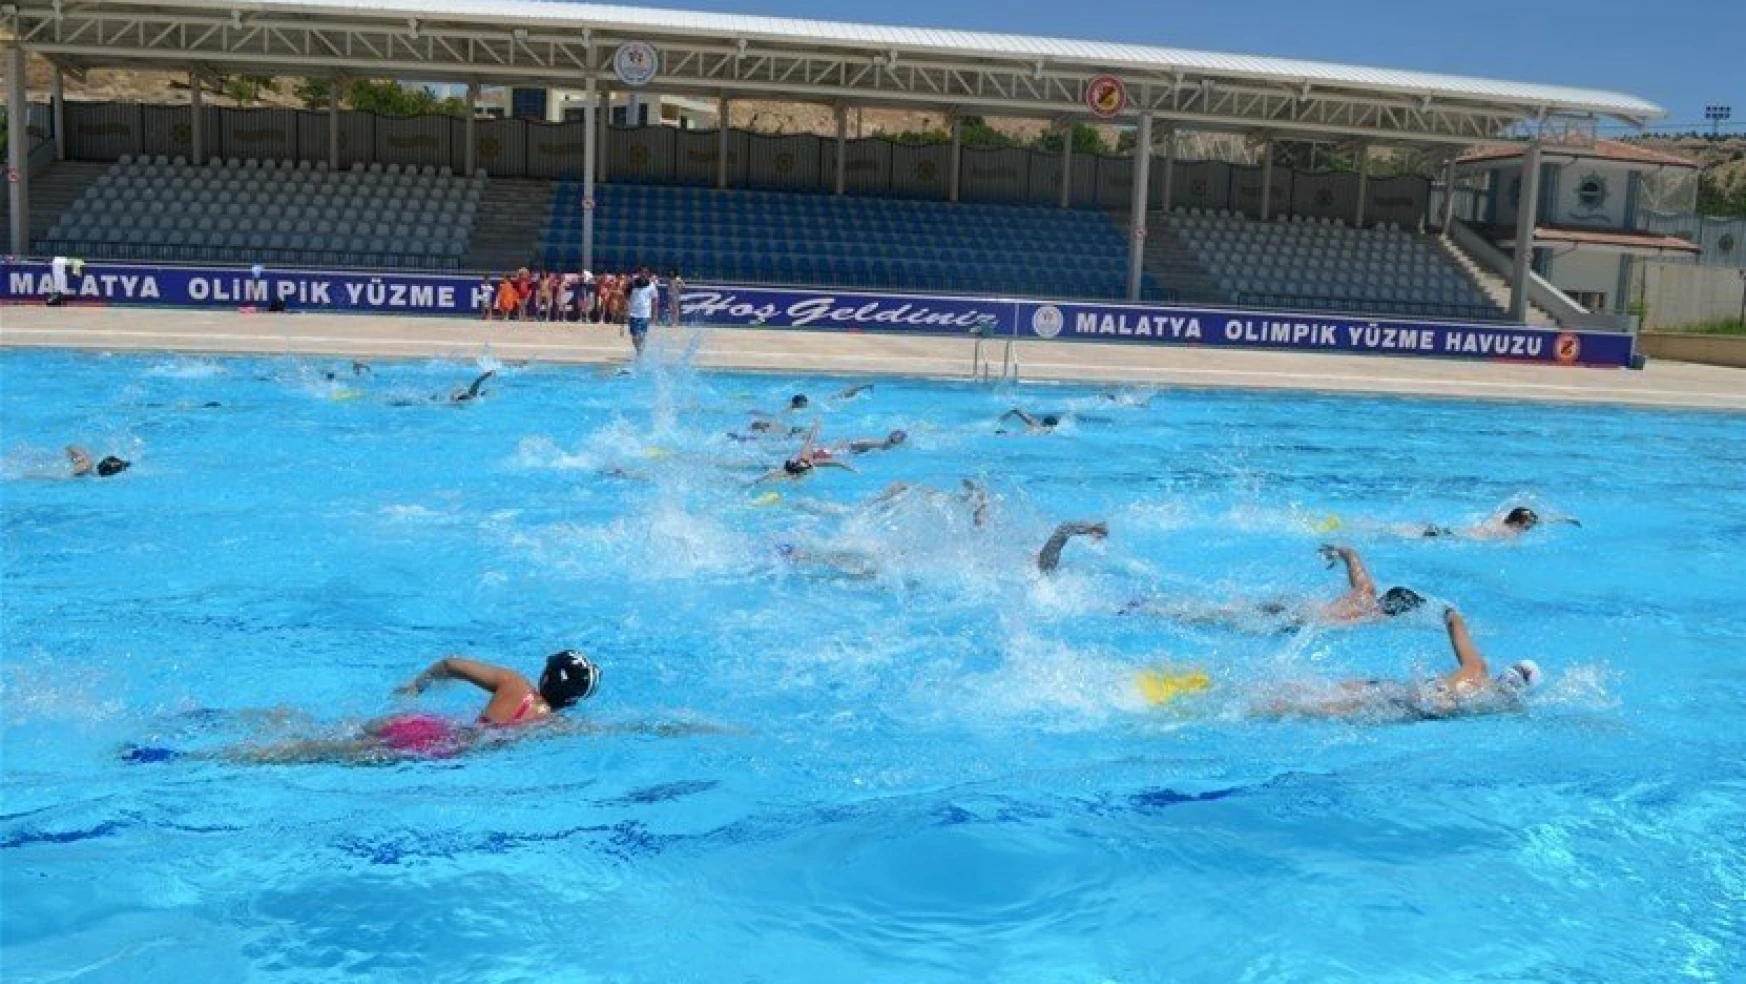 Olimpik Açık Yüzme Havuzuna büyük ilgi
